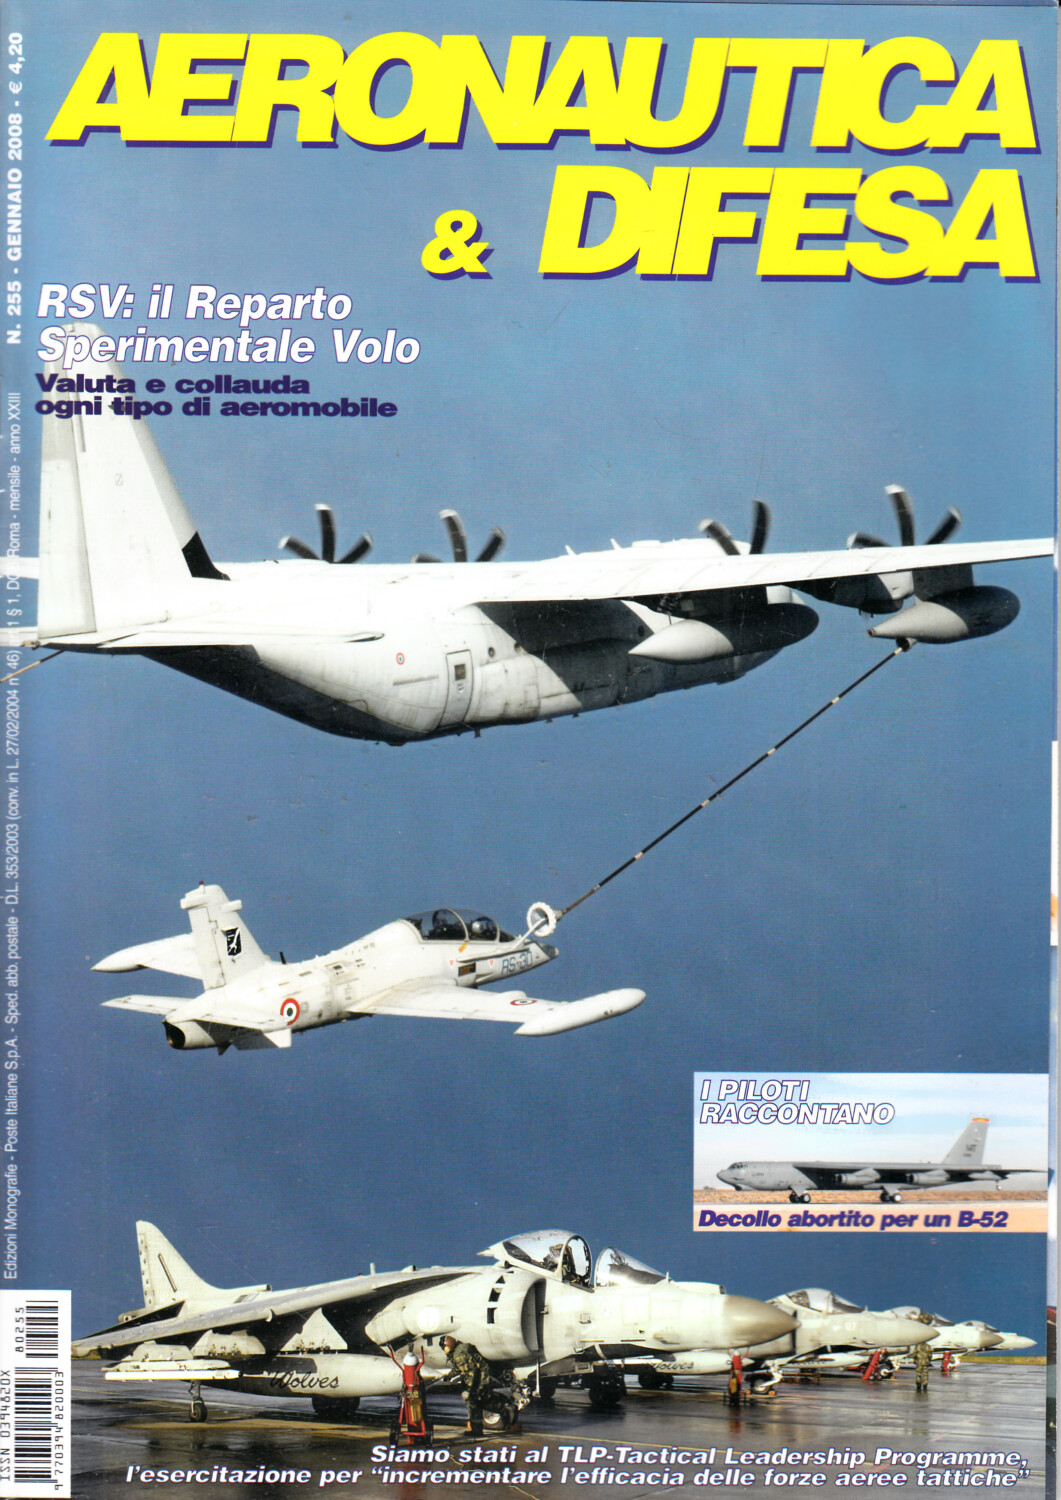 Rivista Aeronautica & Difesa n. 255 - Gennaio 2008. In copertina C-130J Hercules